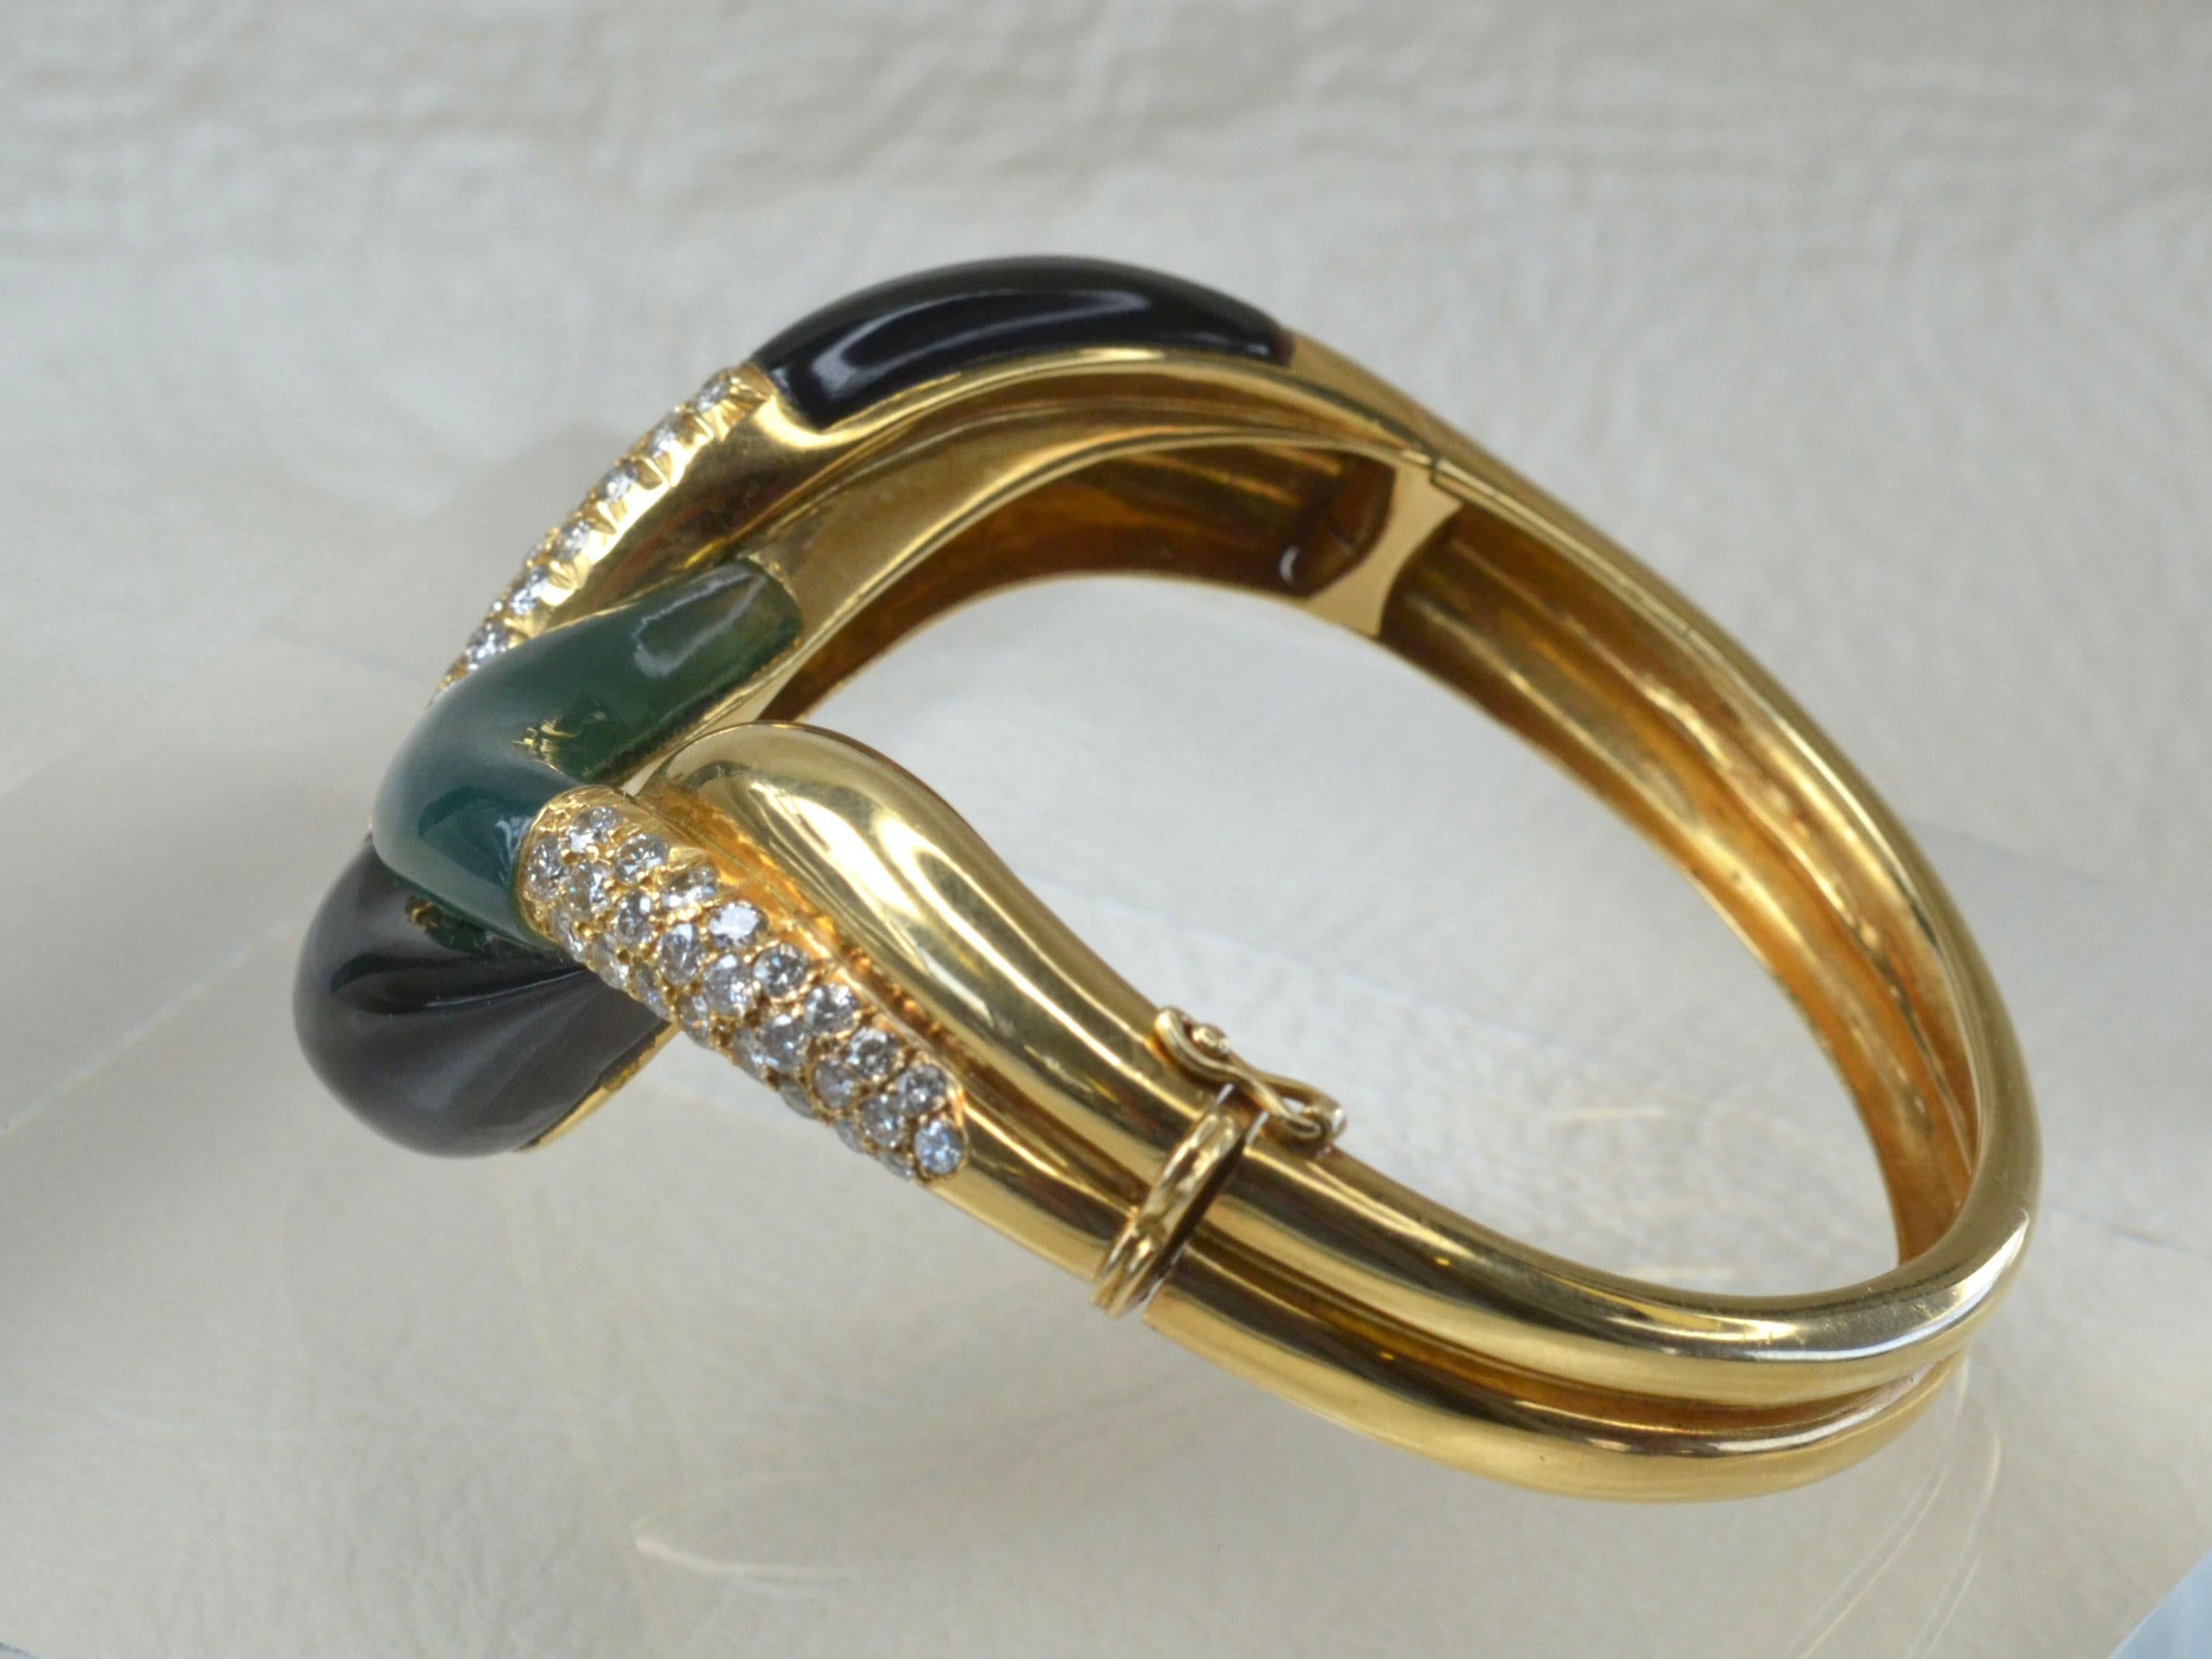 Das ineinander greifende Design dieses Armbands wird durch zwei große, glatte Stücke aus Blank Onyx und ein glatt geschliffenes Stück aus waldgrüner Jade vervollständigt. Insgesamt 20 weiße Diamanten unterstreichen die tiefen Farben der Steine.